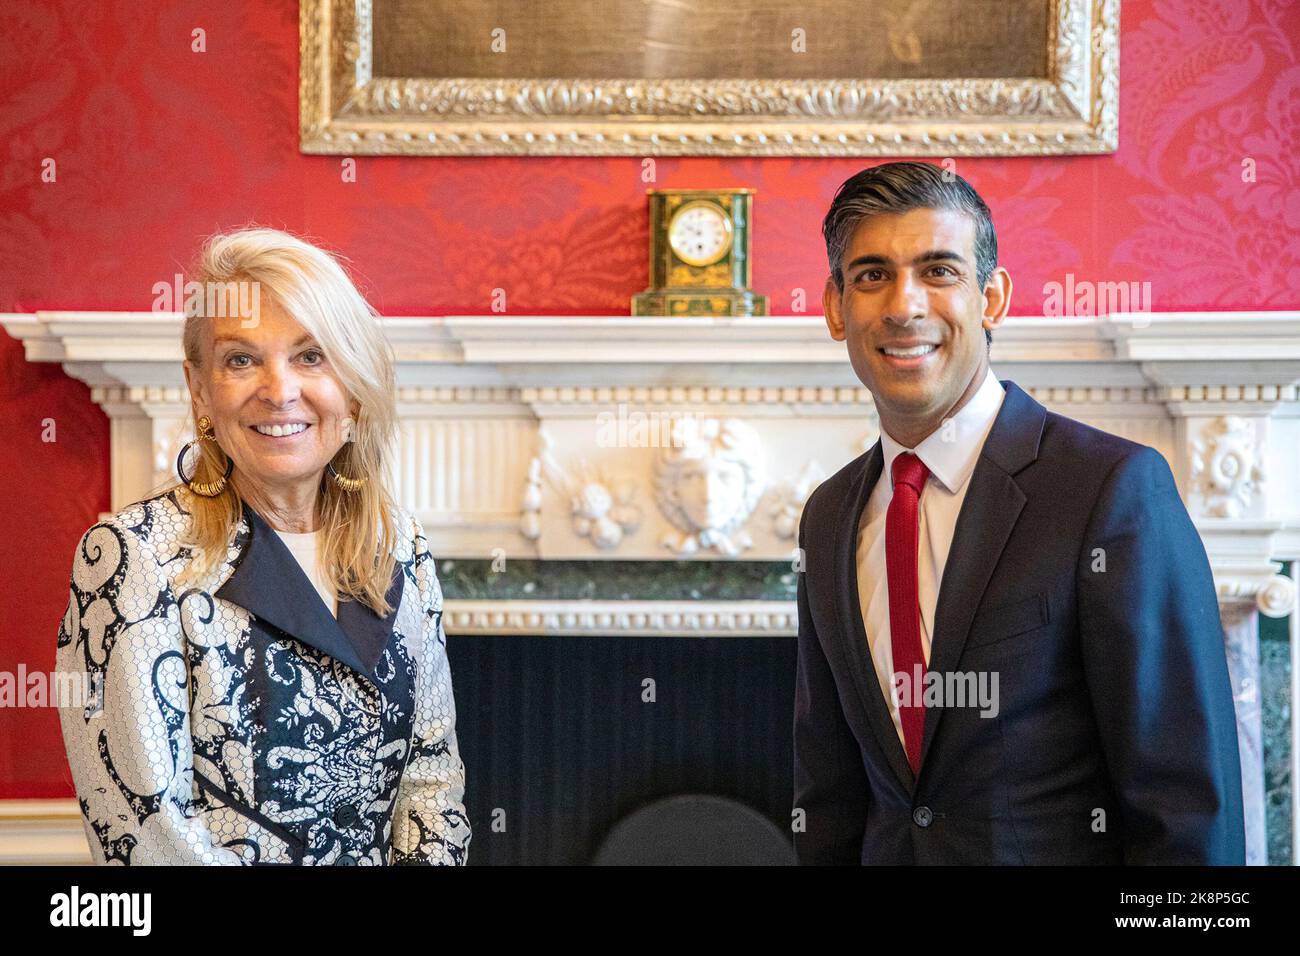 Rishi Sunak - Premierminister des Vereinigten Königreichs - Treffen als Schatzkanzler mit Jane Hartley, US-Botschafterin im Vereinigten Königreich - 2022 Stockfoto